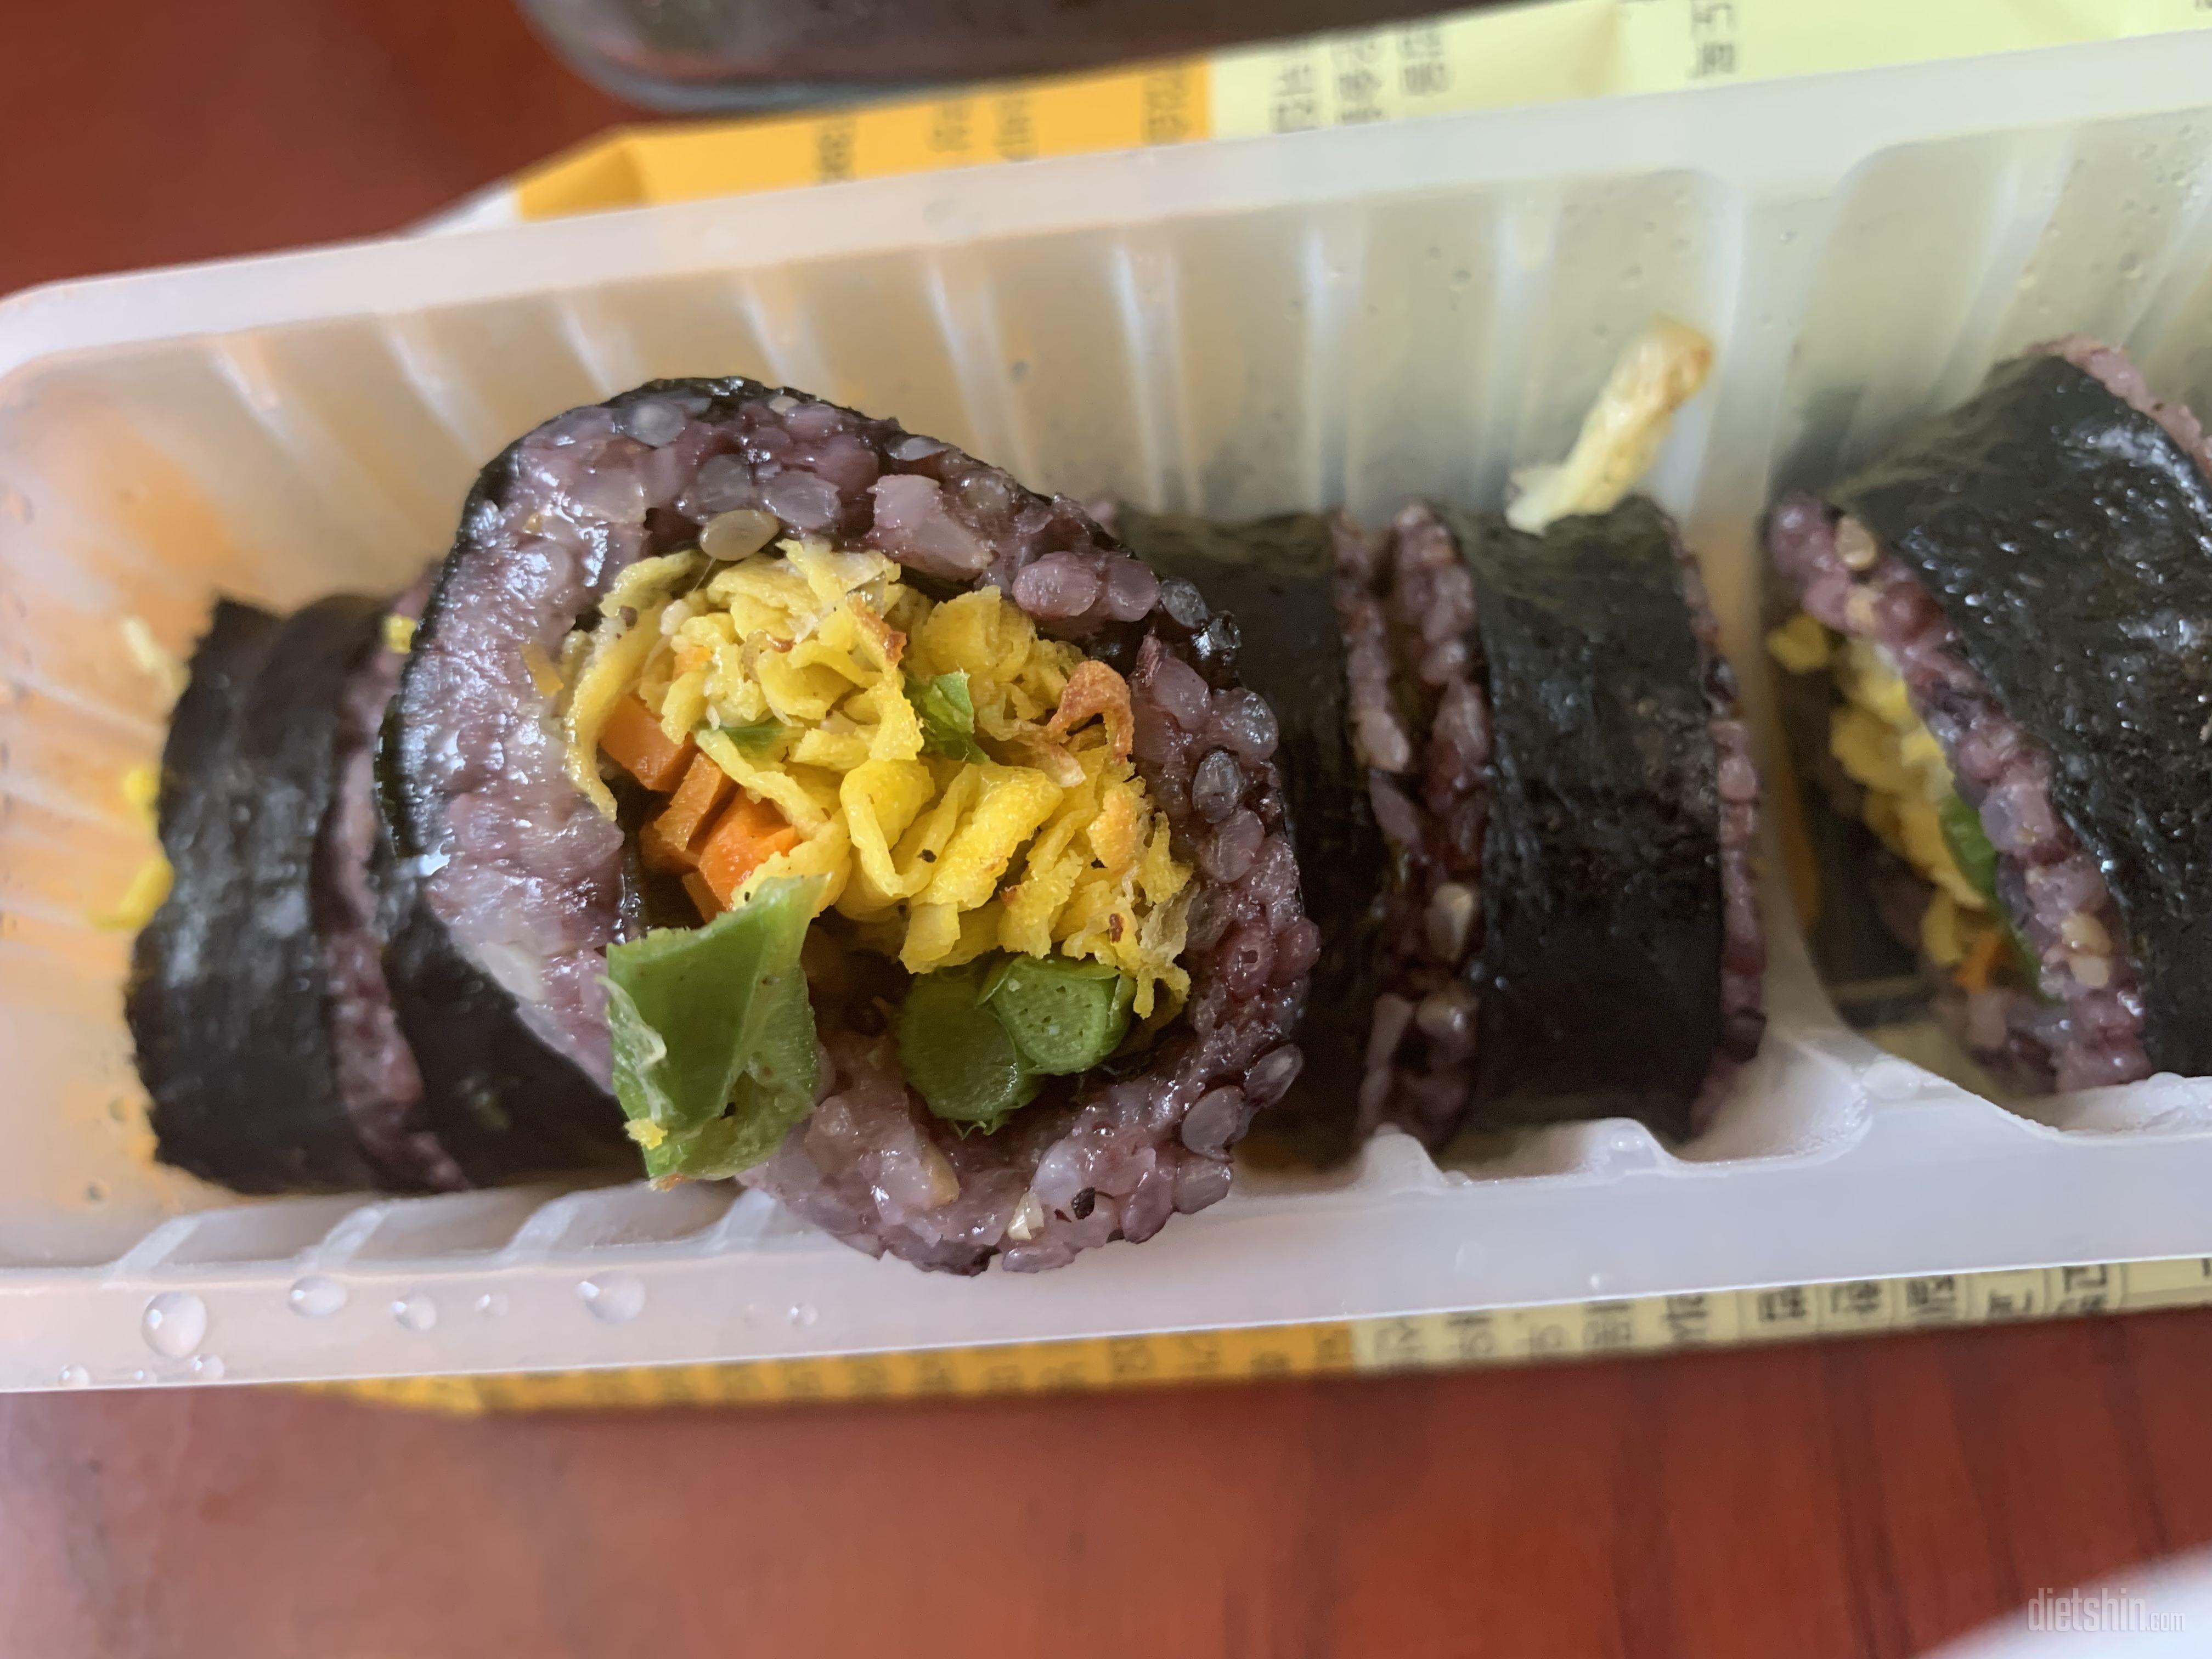 진짜 맛있어요.
점심에 김밥으로 먹